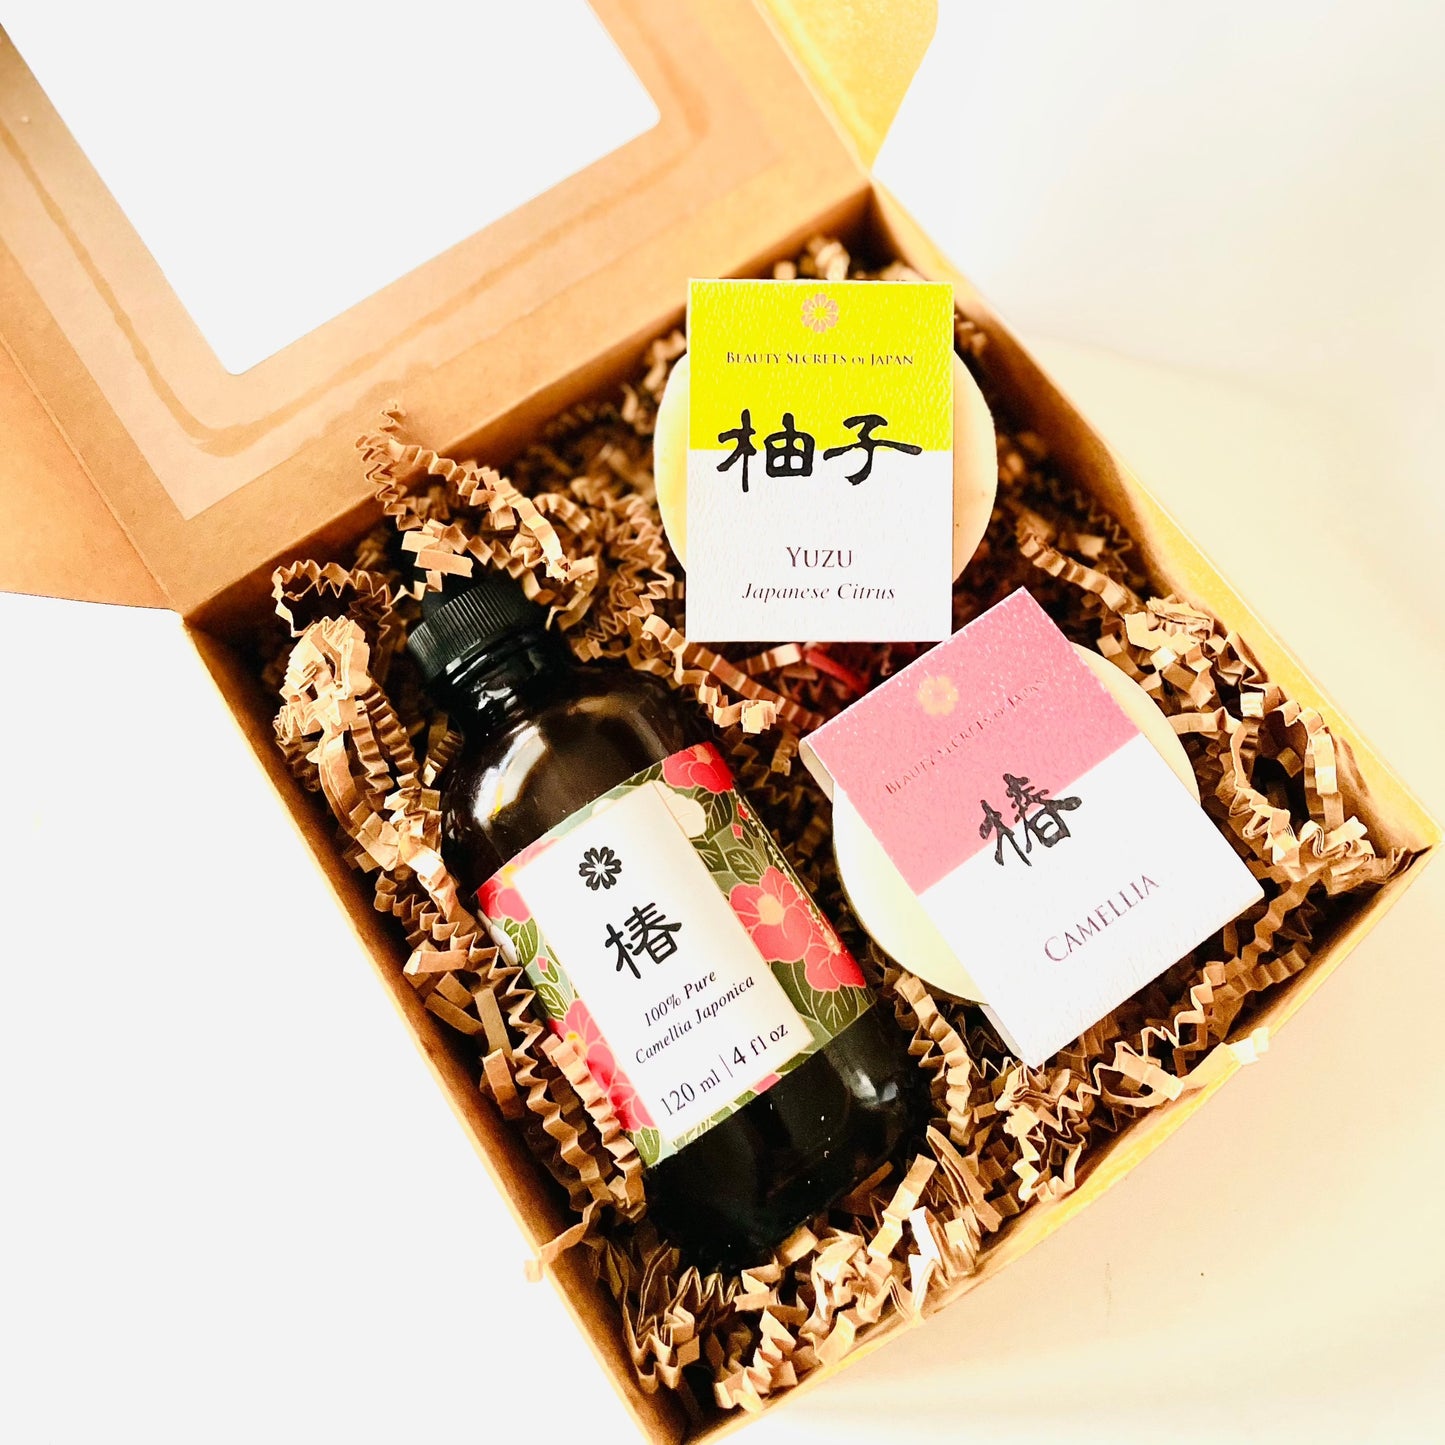 Premium Tsubaki Oil and Soaps Gift Set